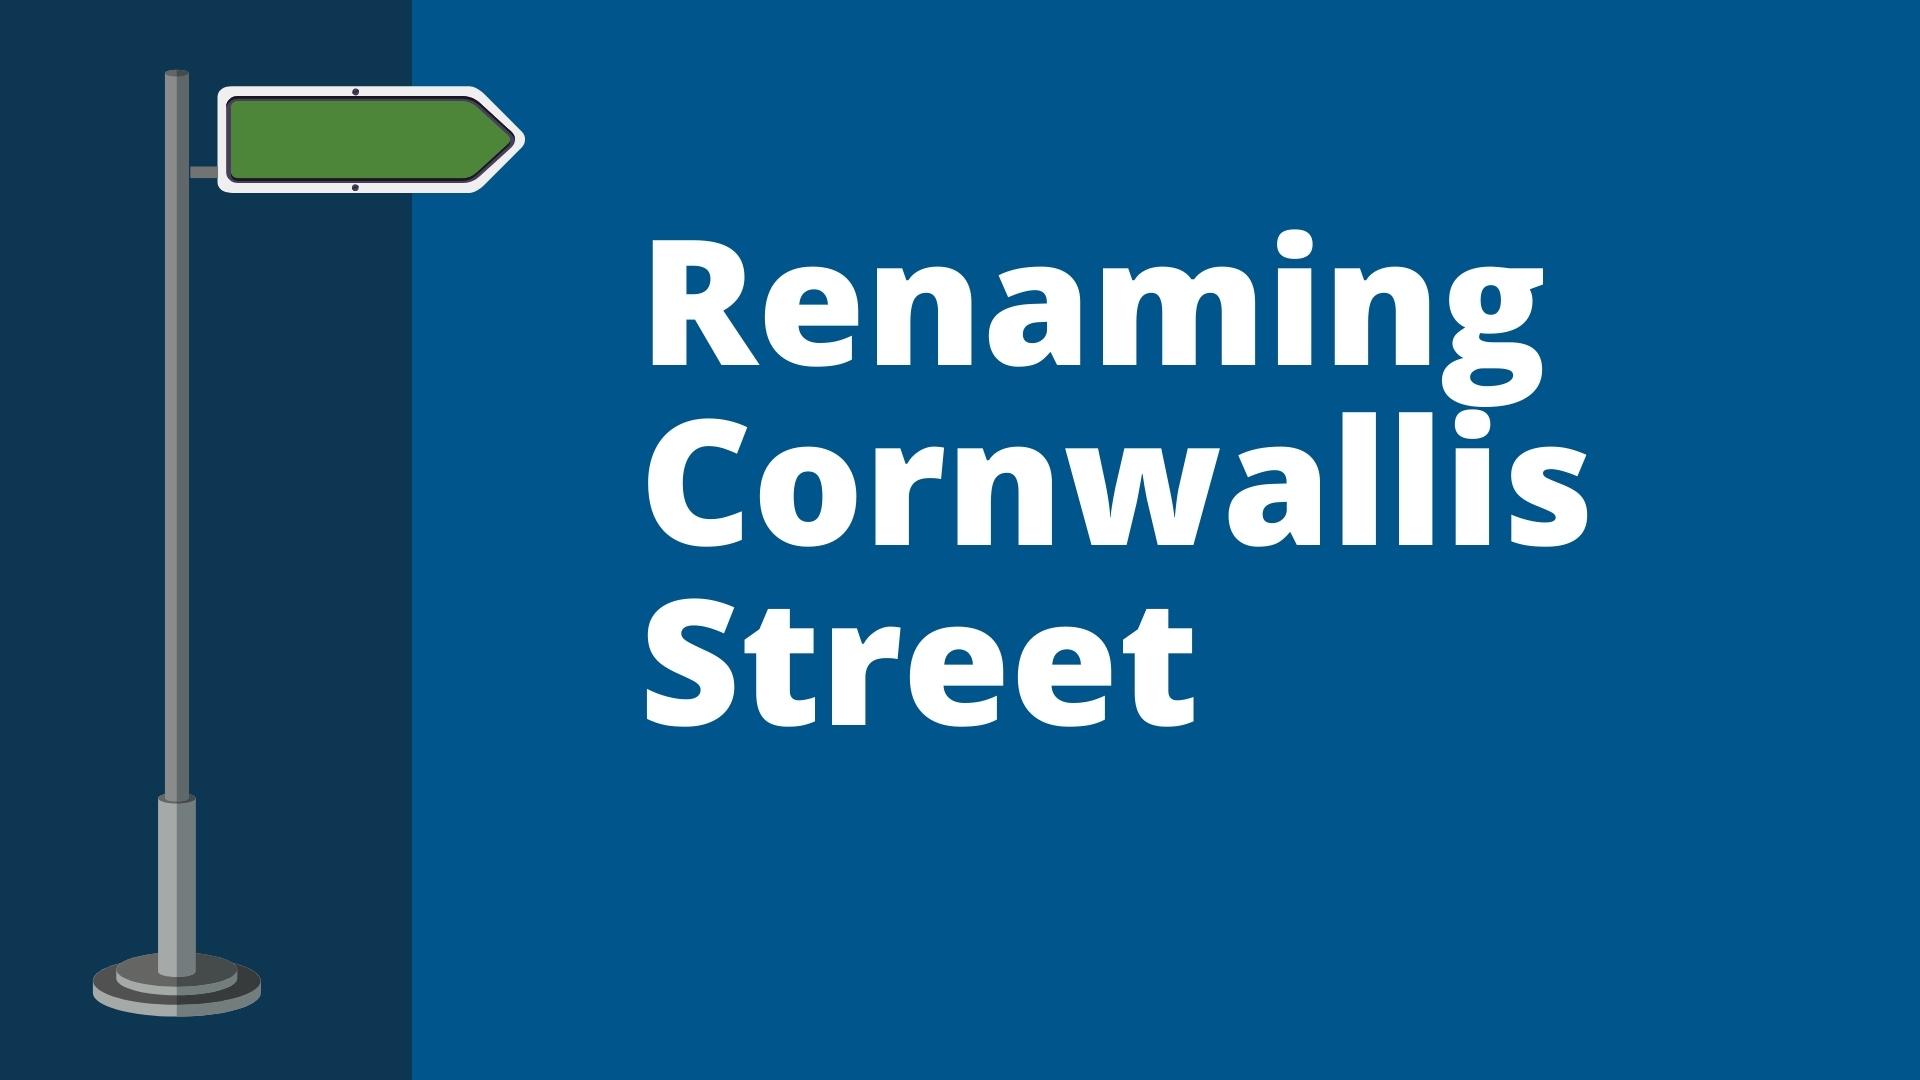 The Renaming Cornwallis Street graphic.